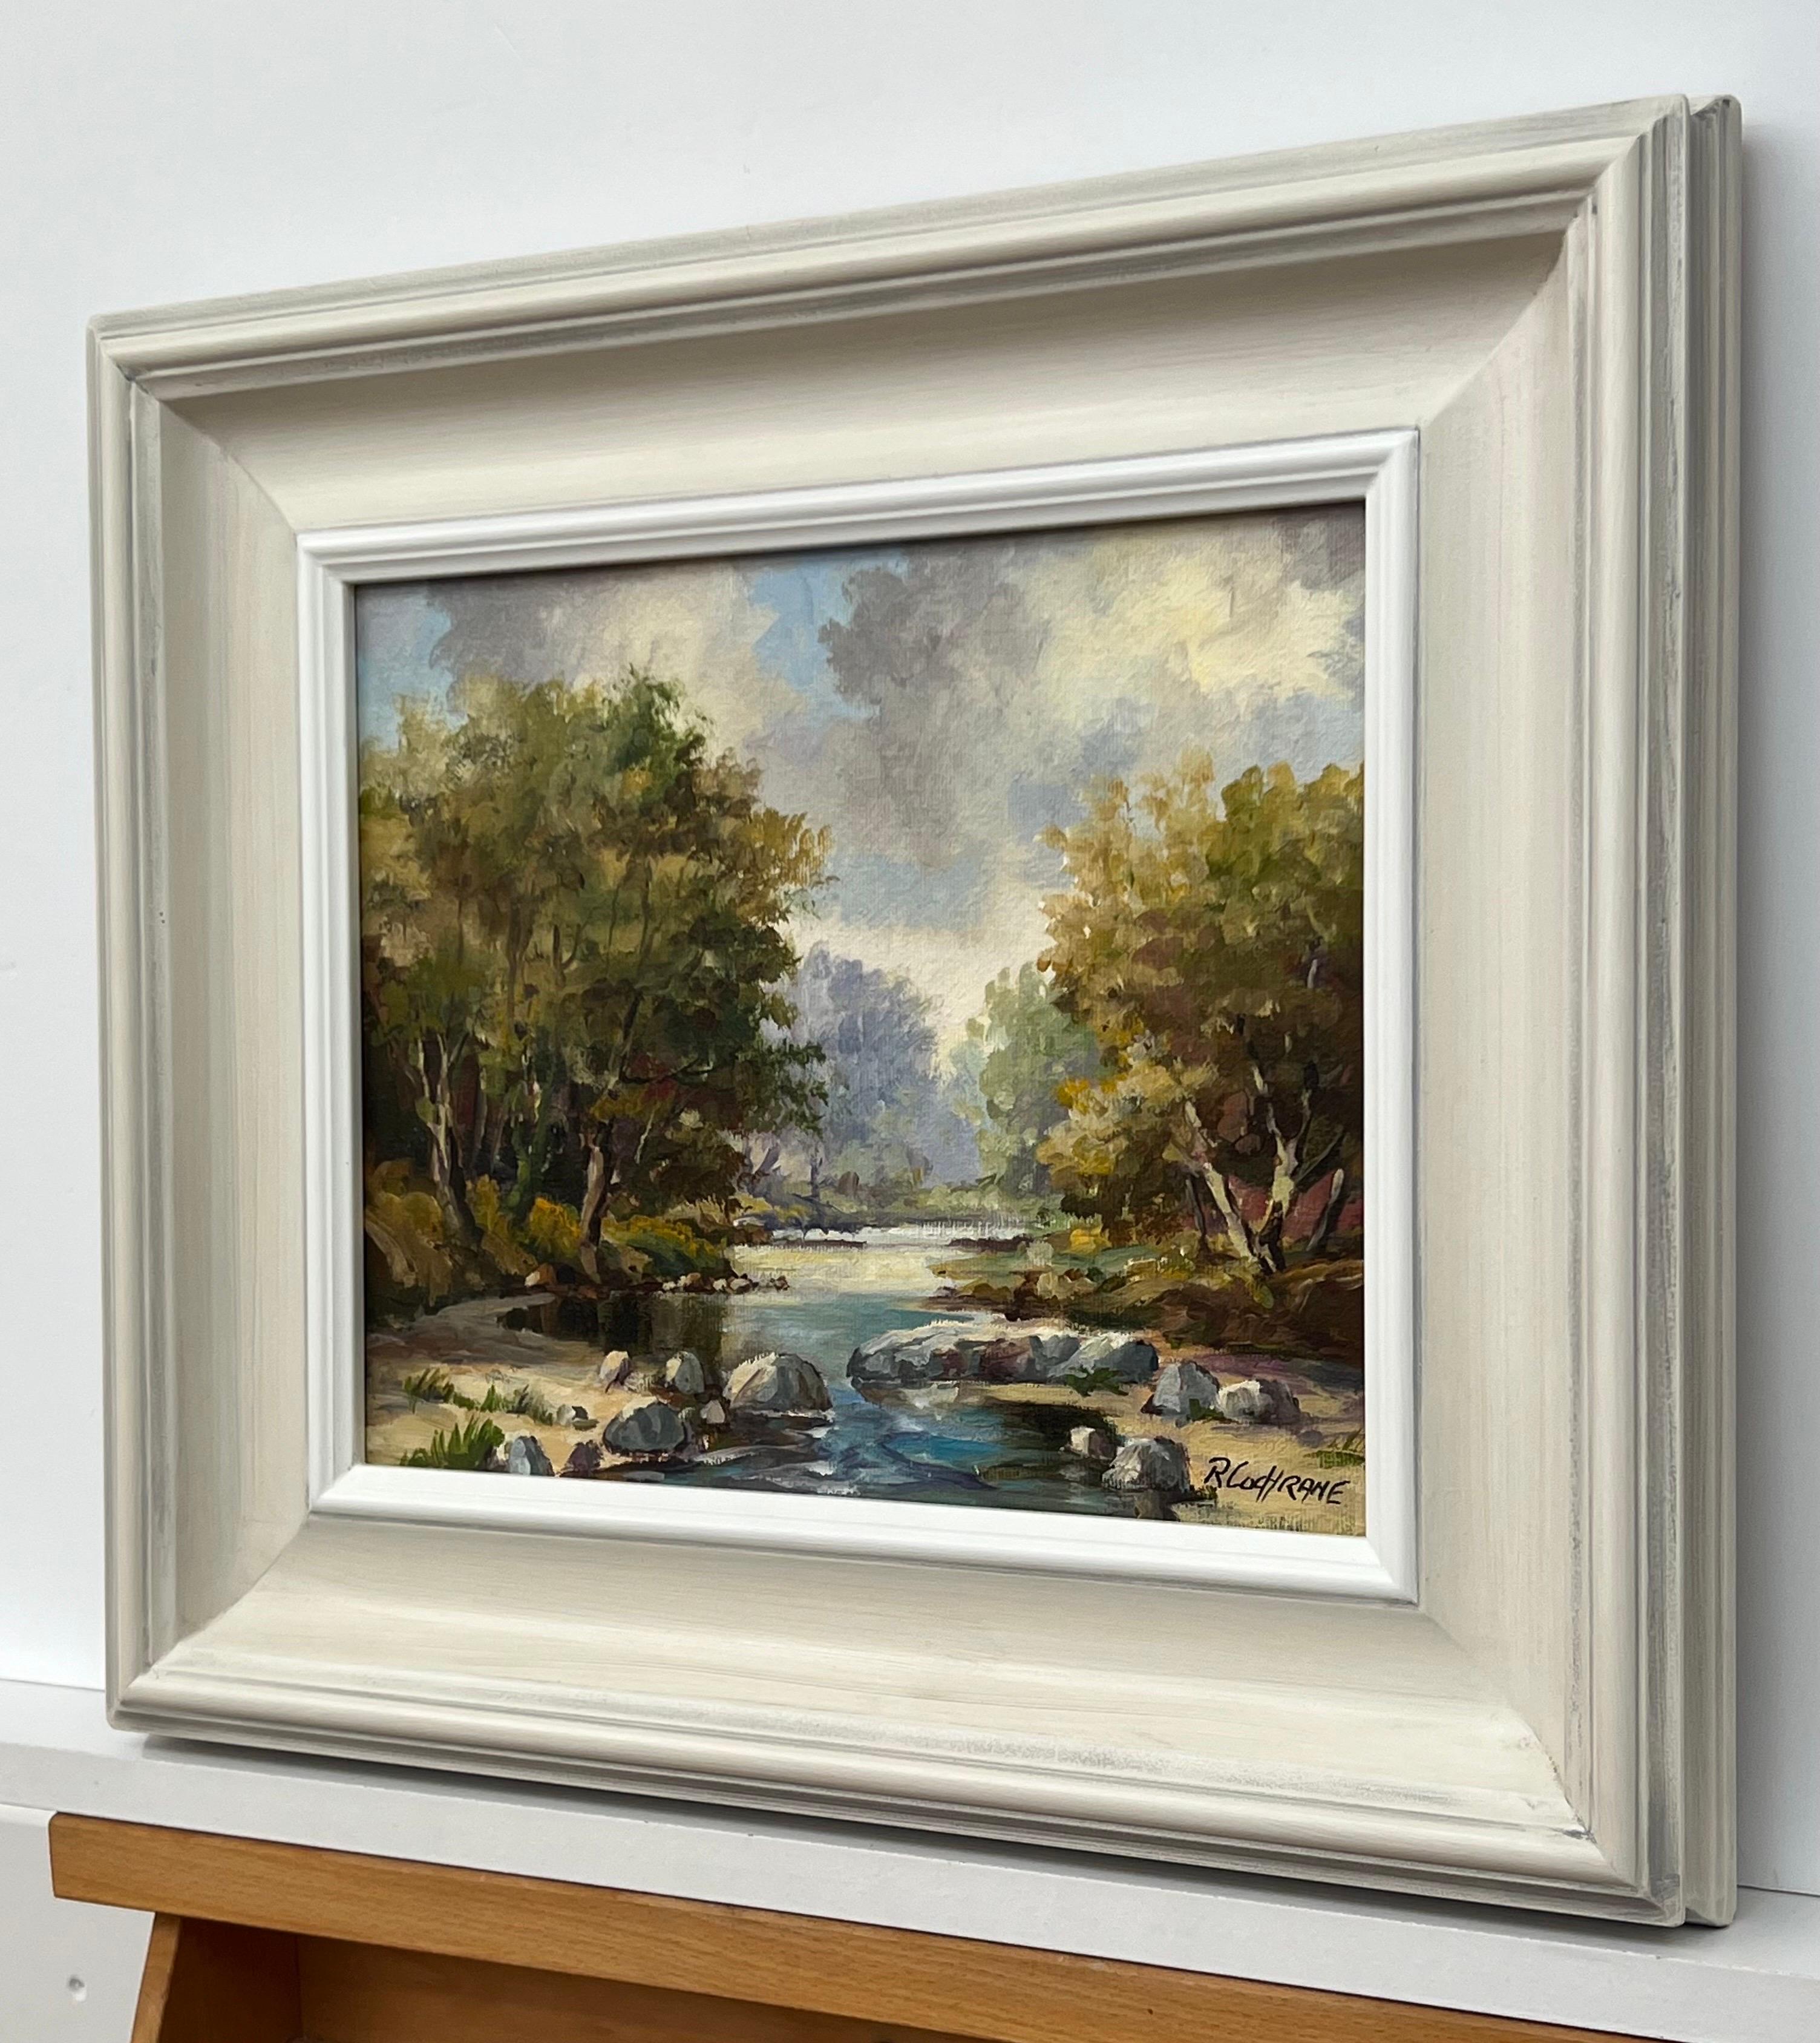 Peinture à l'huile post-impressionniste d'époque représentant une rivière bordée d'arbres dans la campagne d'Irlande du Nord, réalisée par l'artiste irlandais du XXe siècle Ray Cochrane.

L'œuvre d'art mesure 12 x 10 pouces
Le cadre mesure 18 x 16